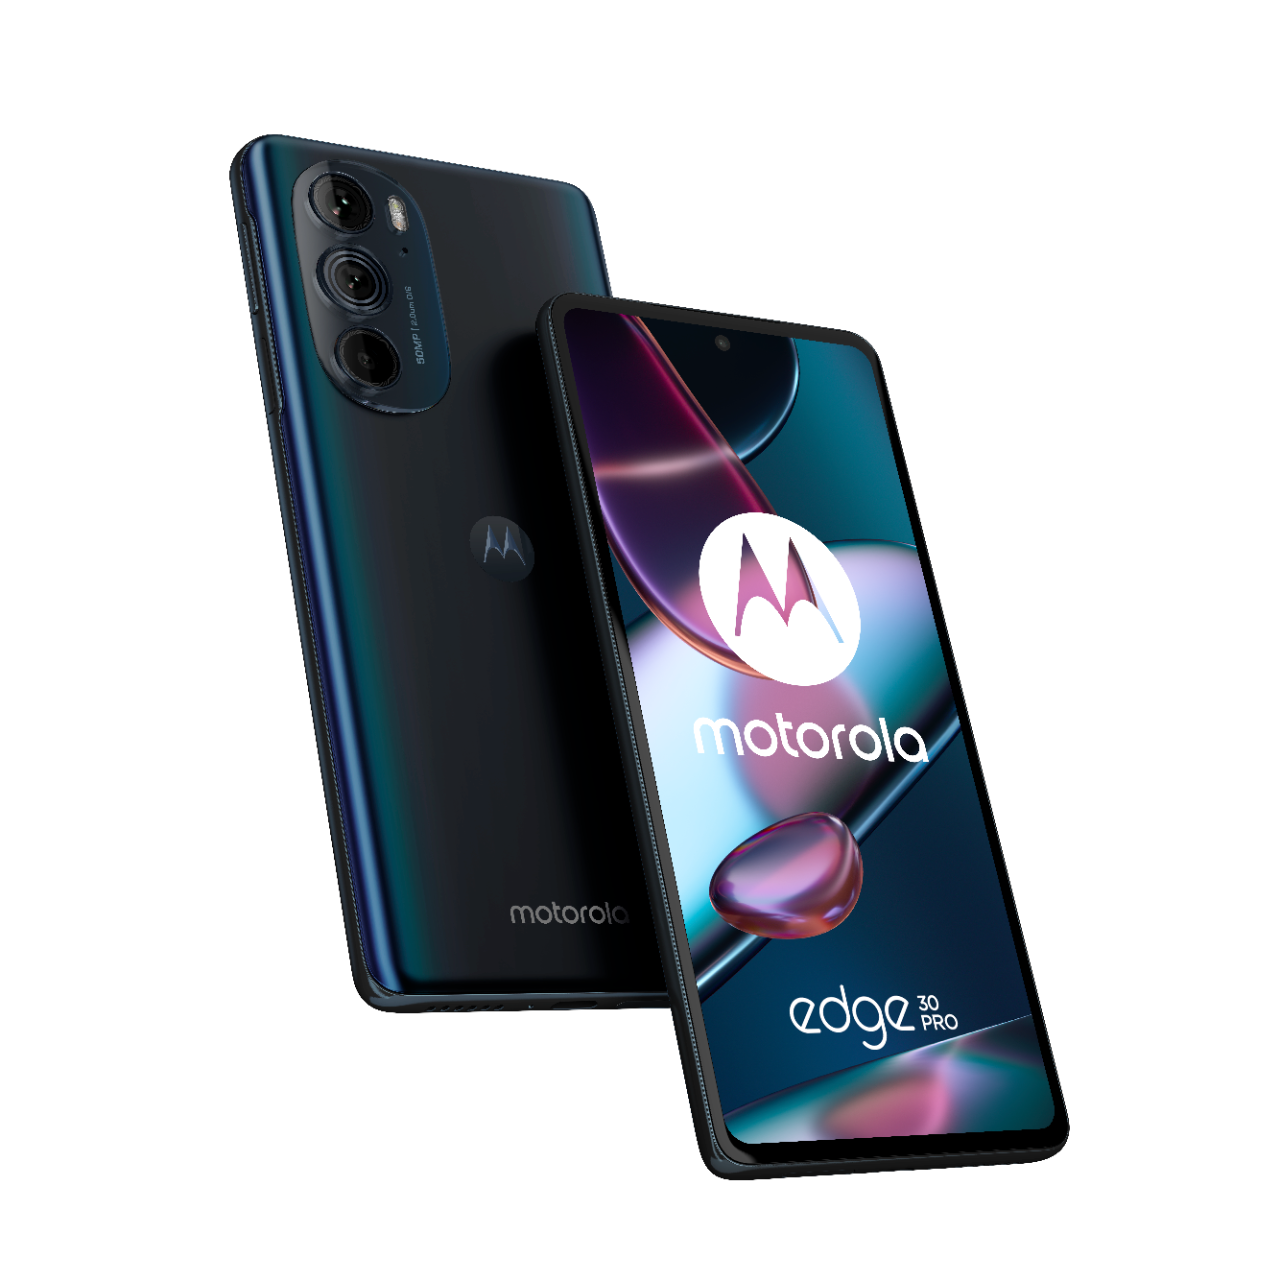 Telefon Doua telefoane Motorola Edge 30 Pro usor inclinate spre spate, unul intors cu spatele si unul cu fata, avand ecranul aprins si afisand logo Motorola